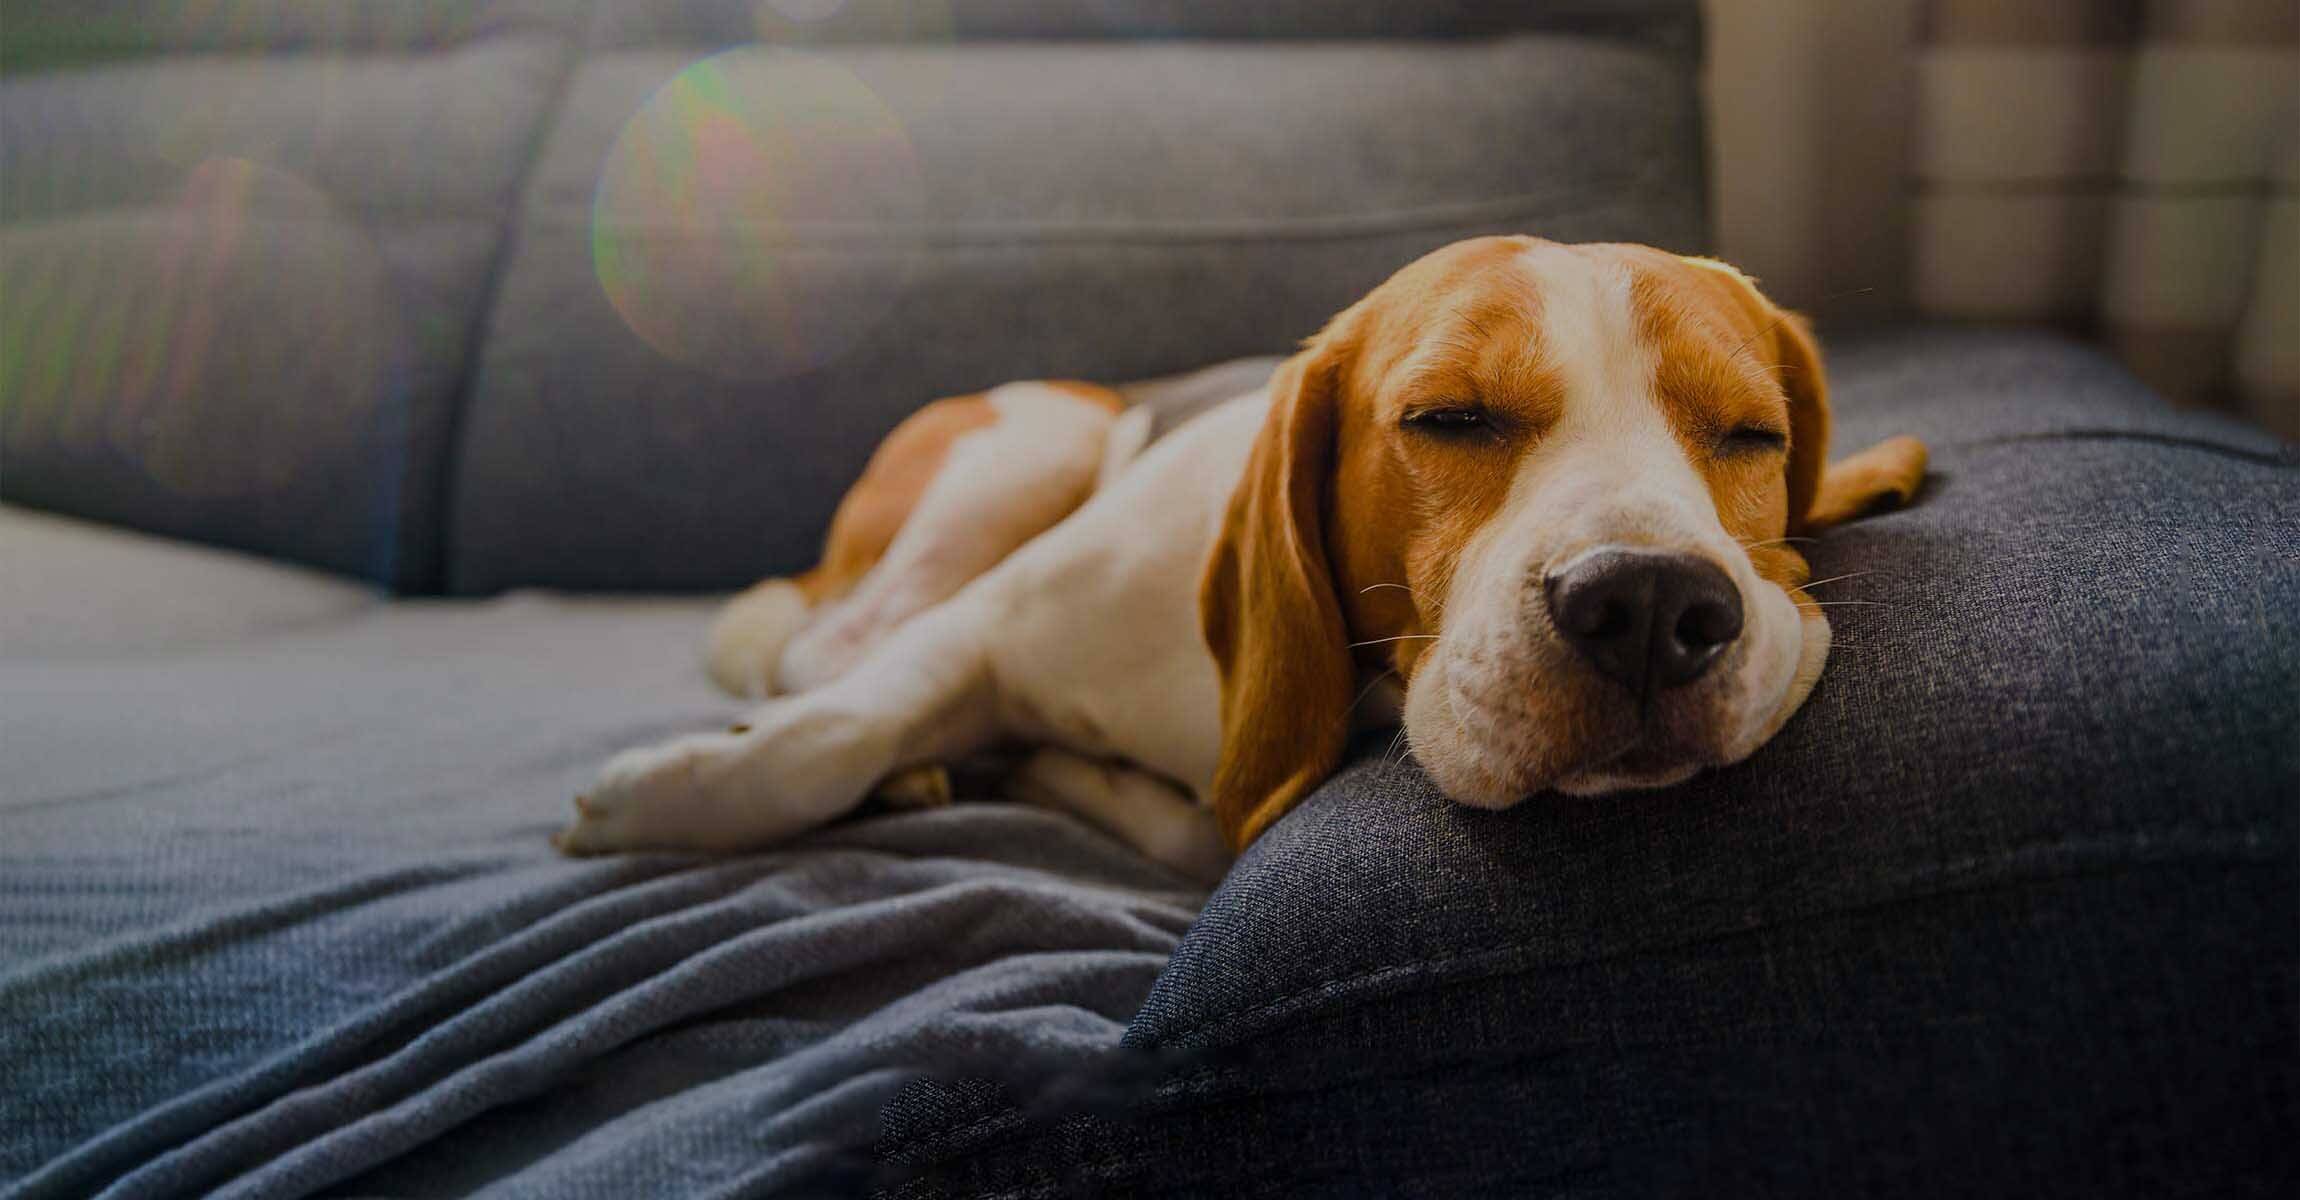 Sleeping dog on sofa